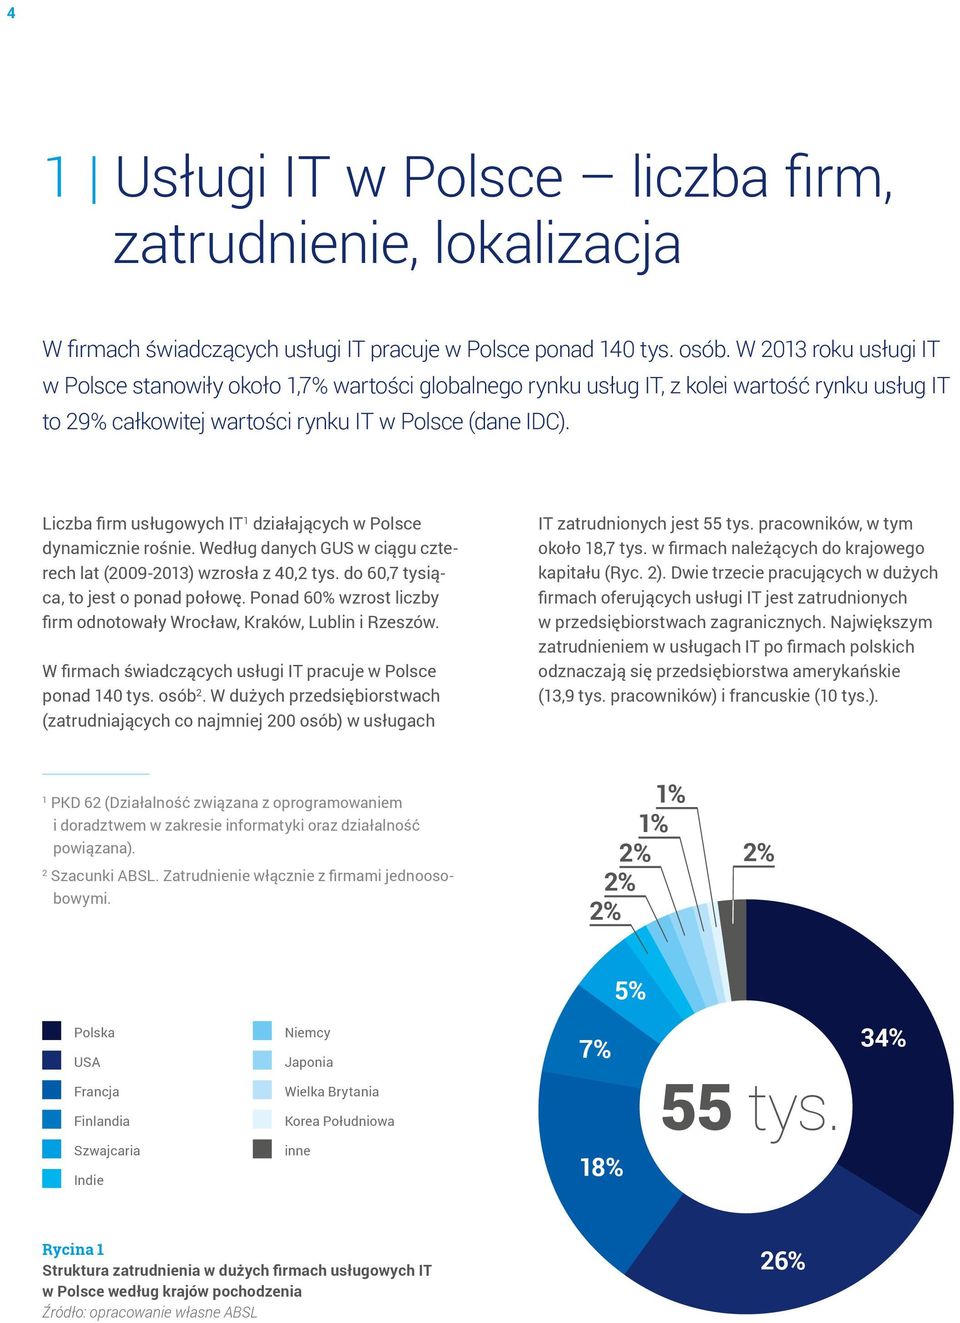 Liczba firm usługowych IT 1 działających w Polsce dynamicznie rośnie. Według danych GUS w ciągu czterech lat (2009-2013) wzrosła z 40,2 tys. do 60,7 tysiąca, to jest o ponad połowę.